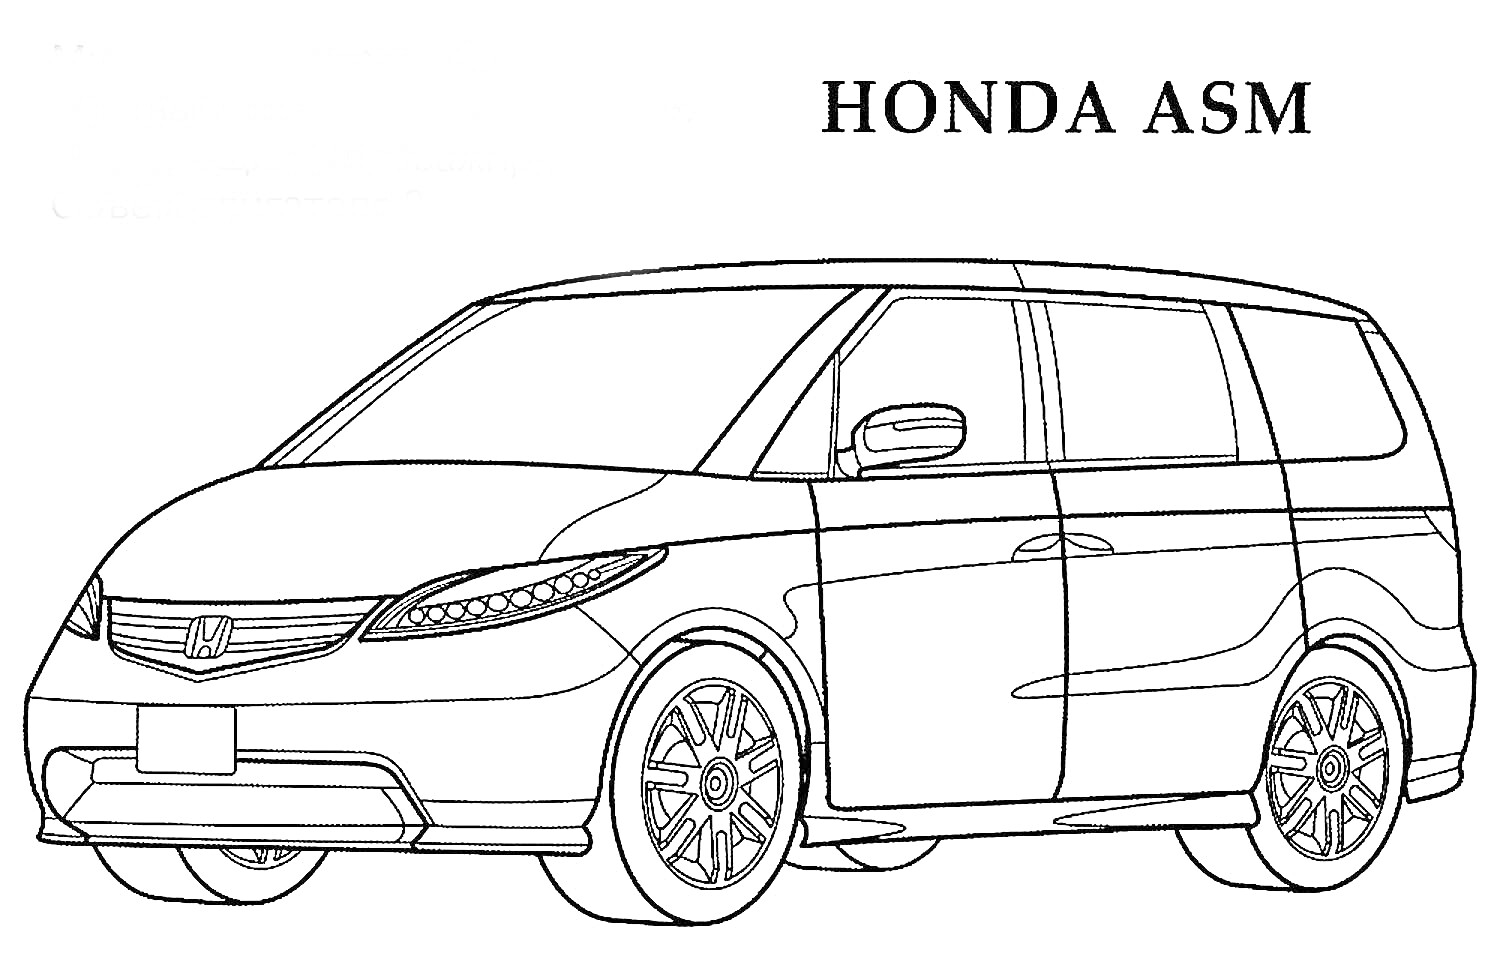 Автомобиль минивэн Honda ASM, детали кузова, фары, зеркала, окна, колеса